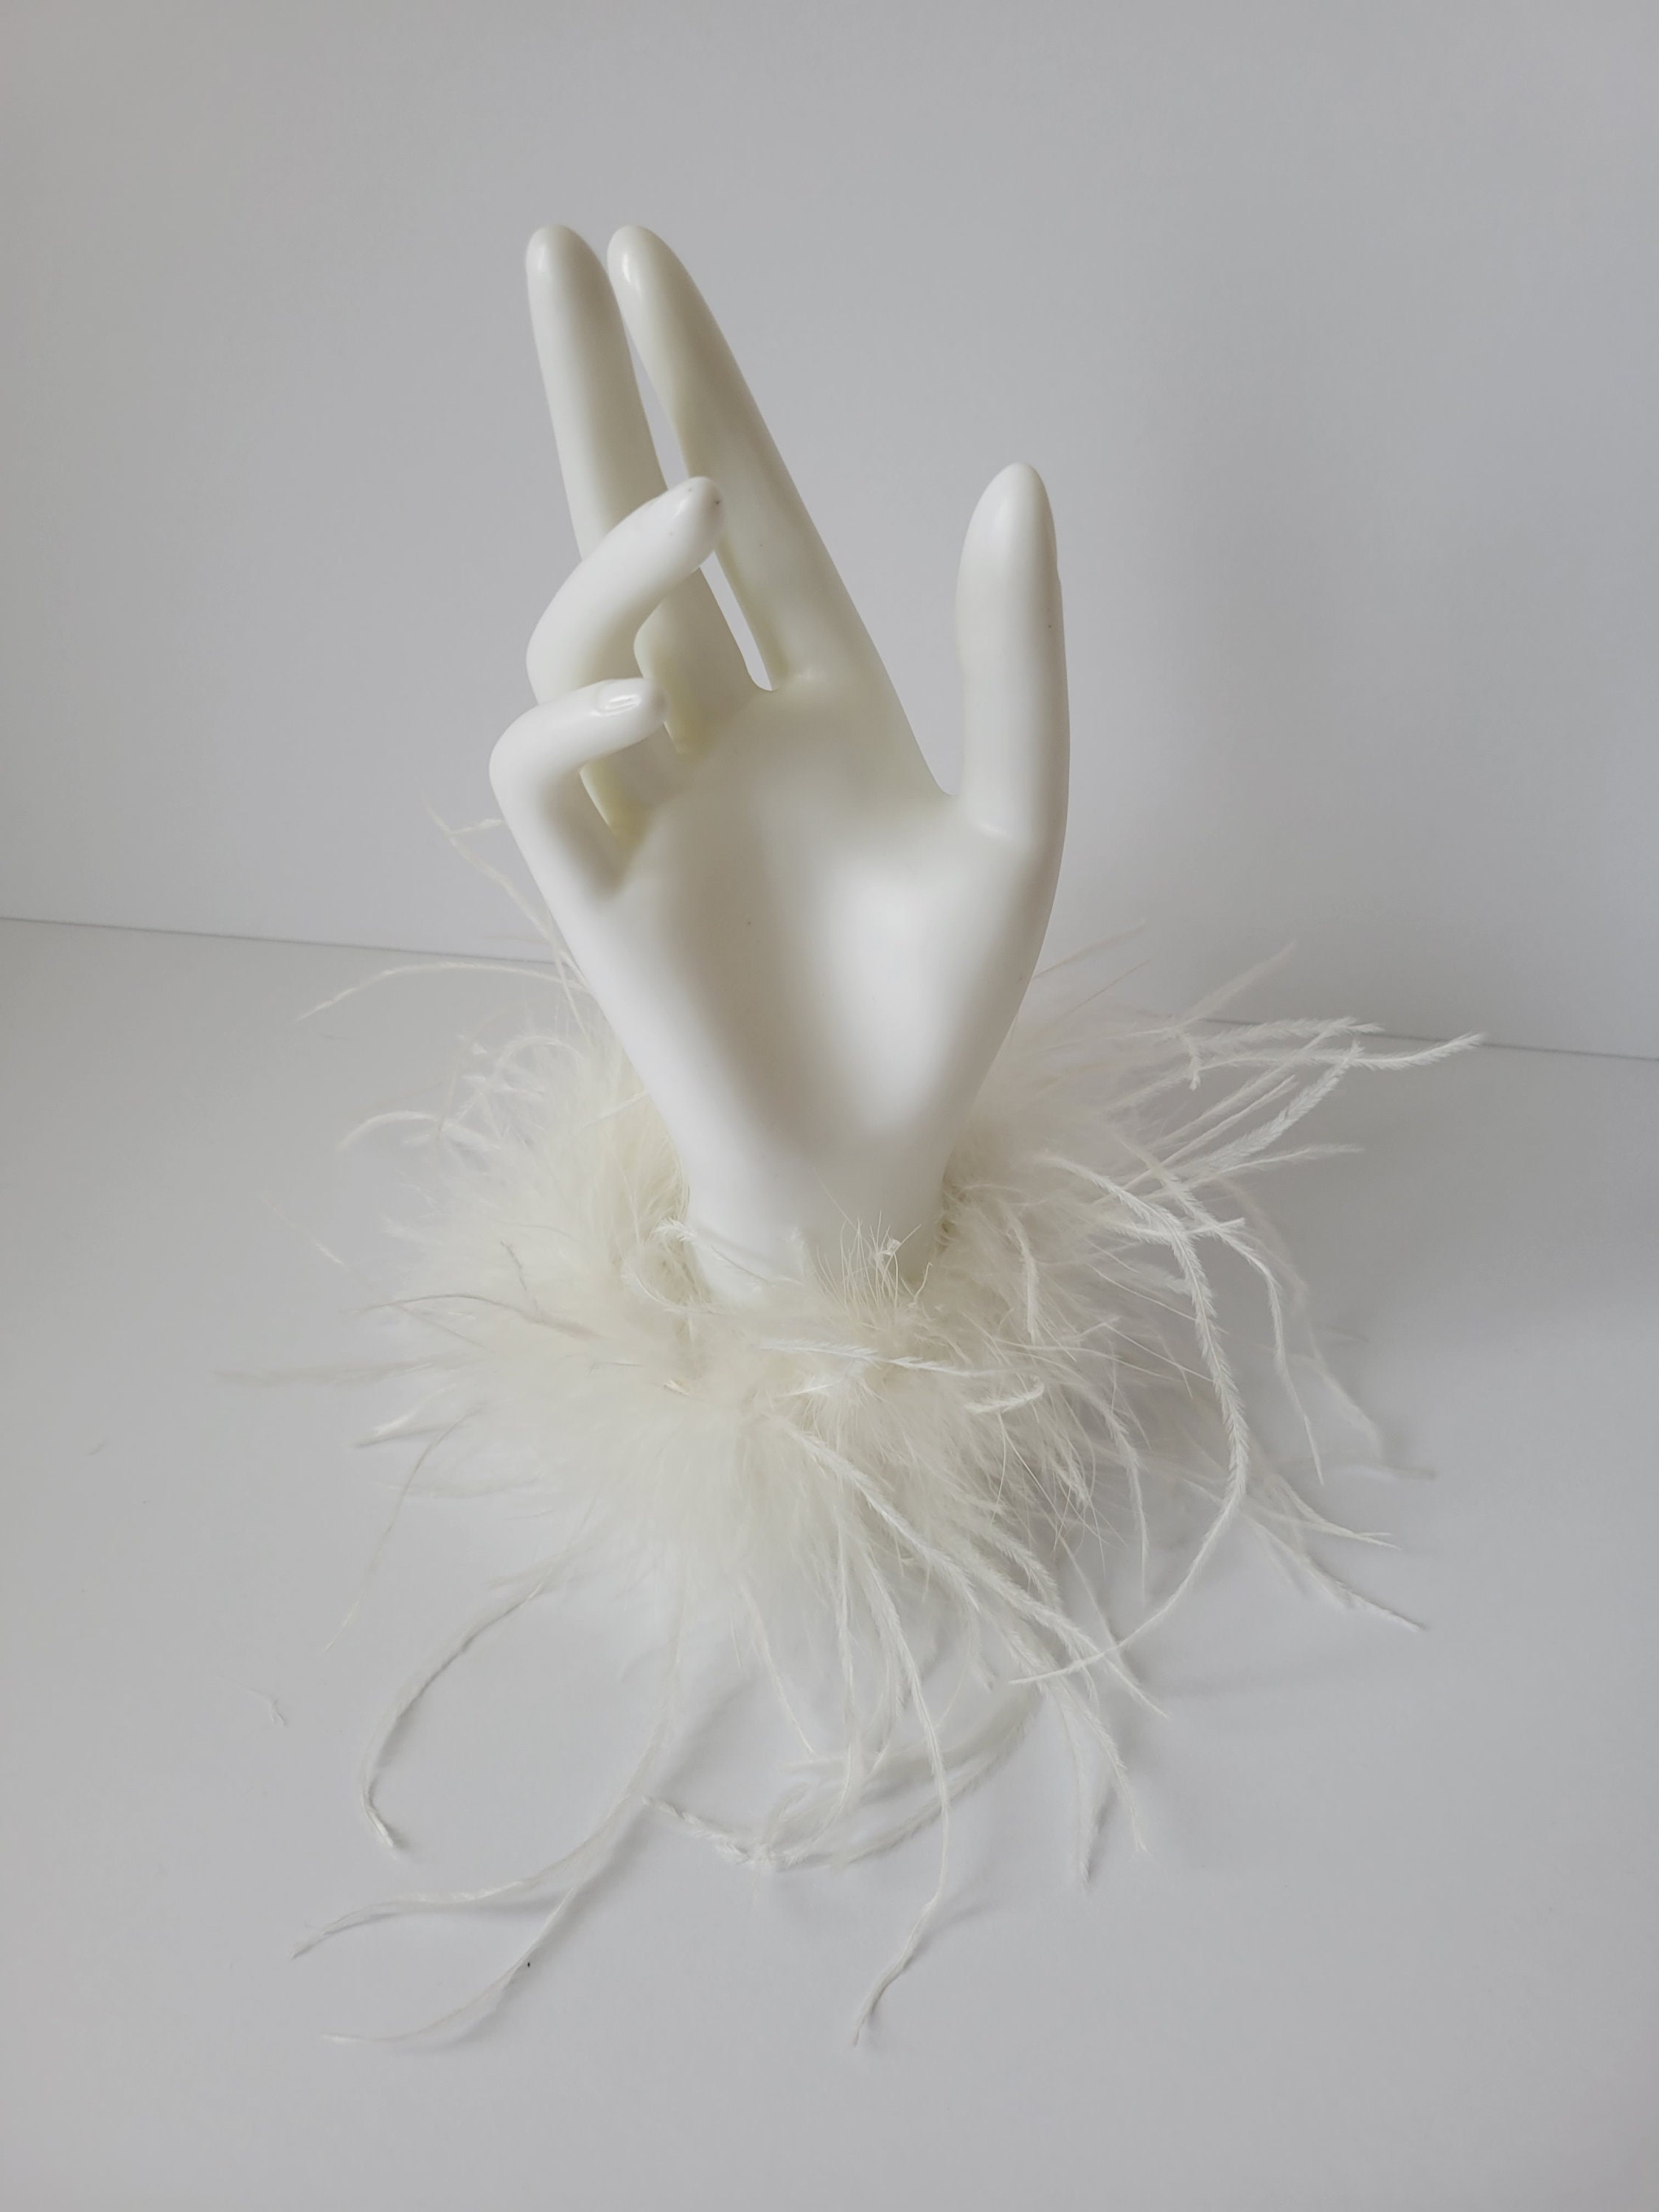 5 Pcs White Ostrich Feathers,White Feathers for Vase - 10pcs Decorative  Feathers for Centerpieces, Flower Arrangement, Home Decoration, 45-50cm  Borato: Hanging Ornaments